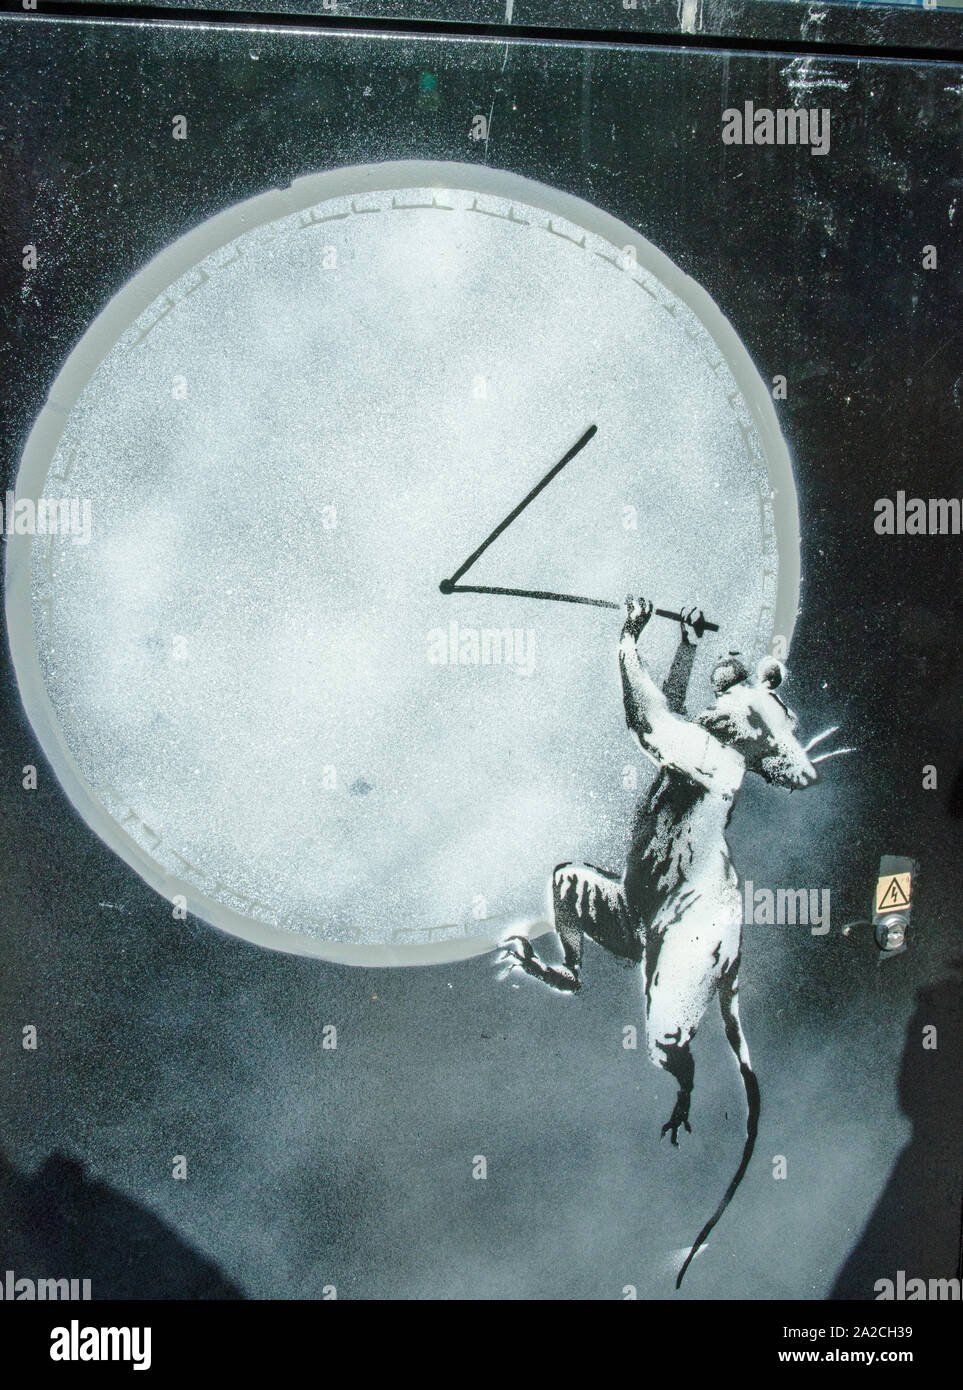 Pochoir de Banksy, un rat s'accrocher aux mains d'une horloge. Pulvérisée sur une pièce de mobilier urbain sur un trottoir à Croydon, dans le sud de Londres. Banque D'Images